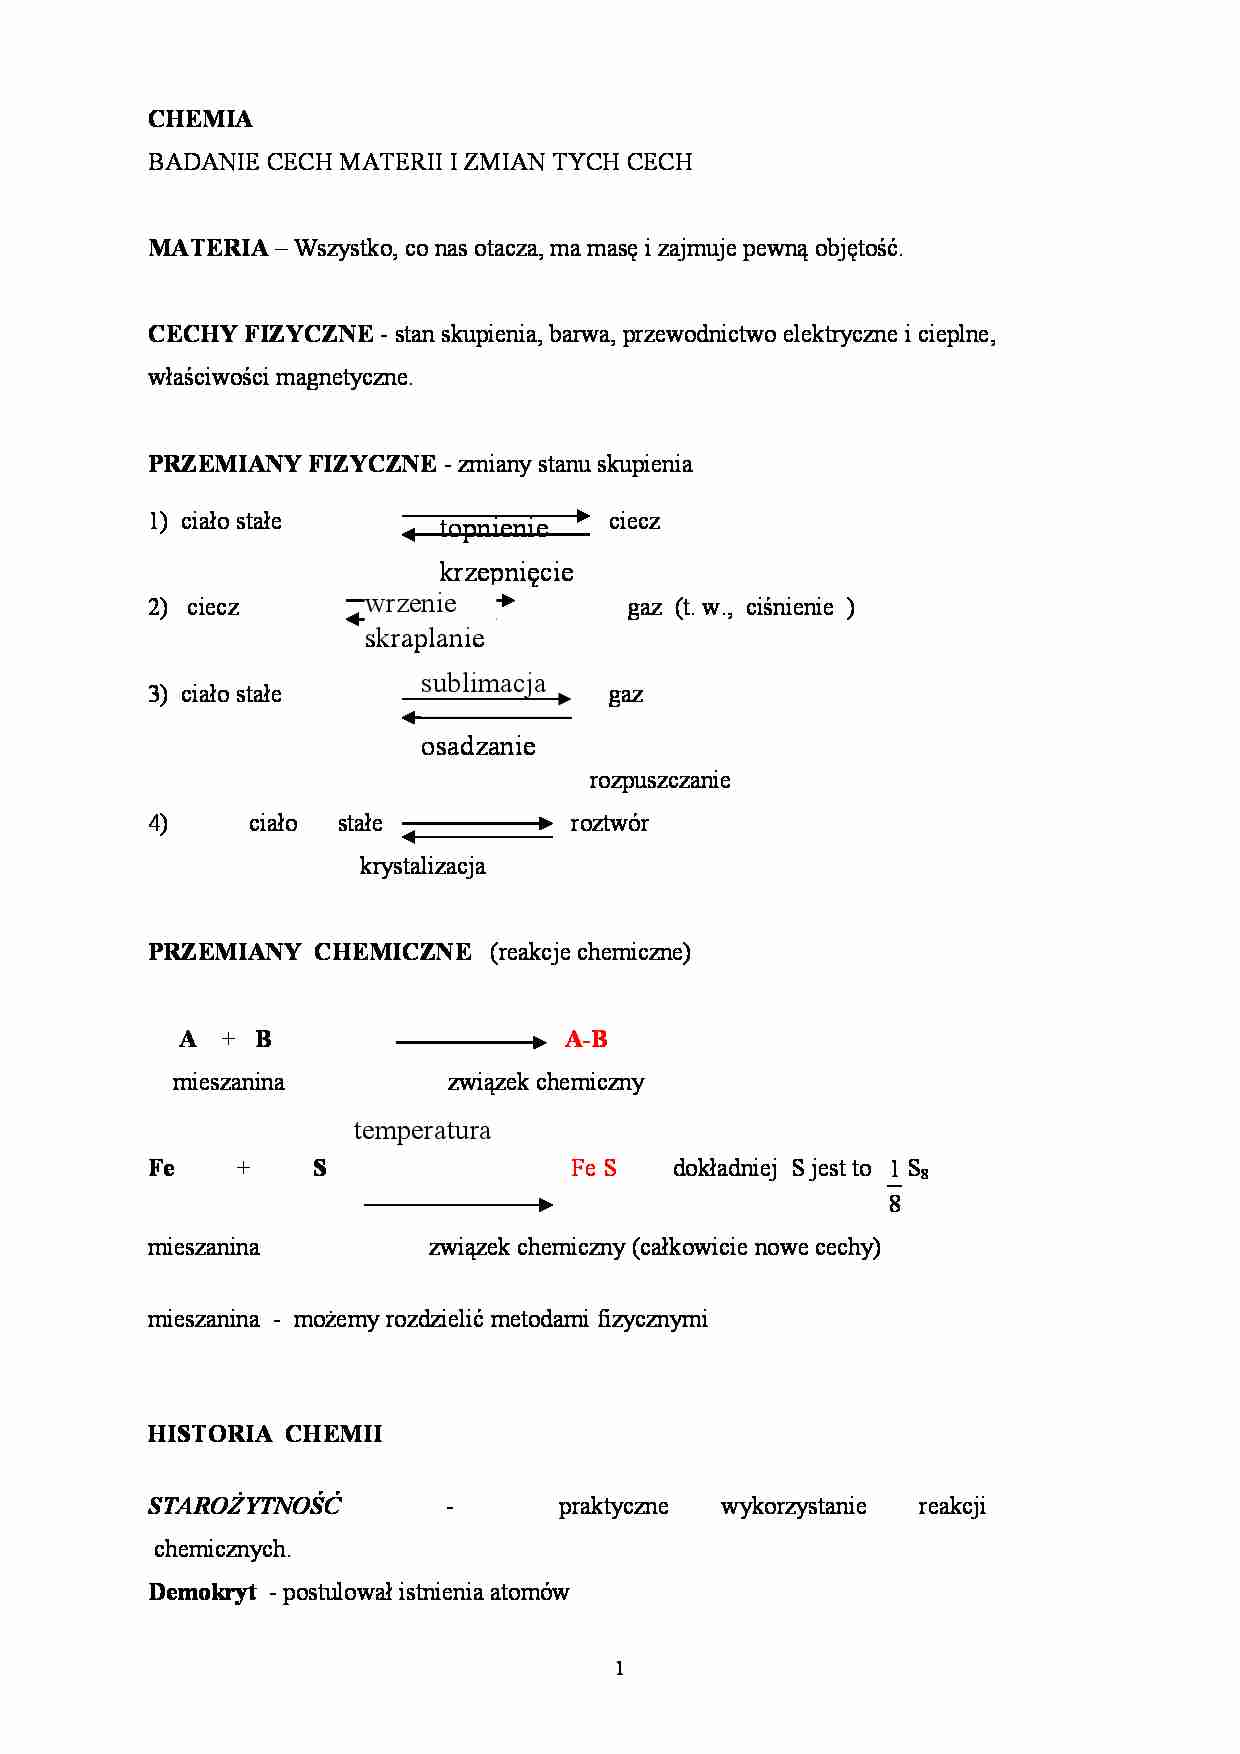 Chemia nieorganiczna - cechy materii - strona 1